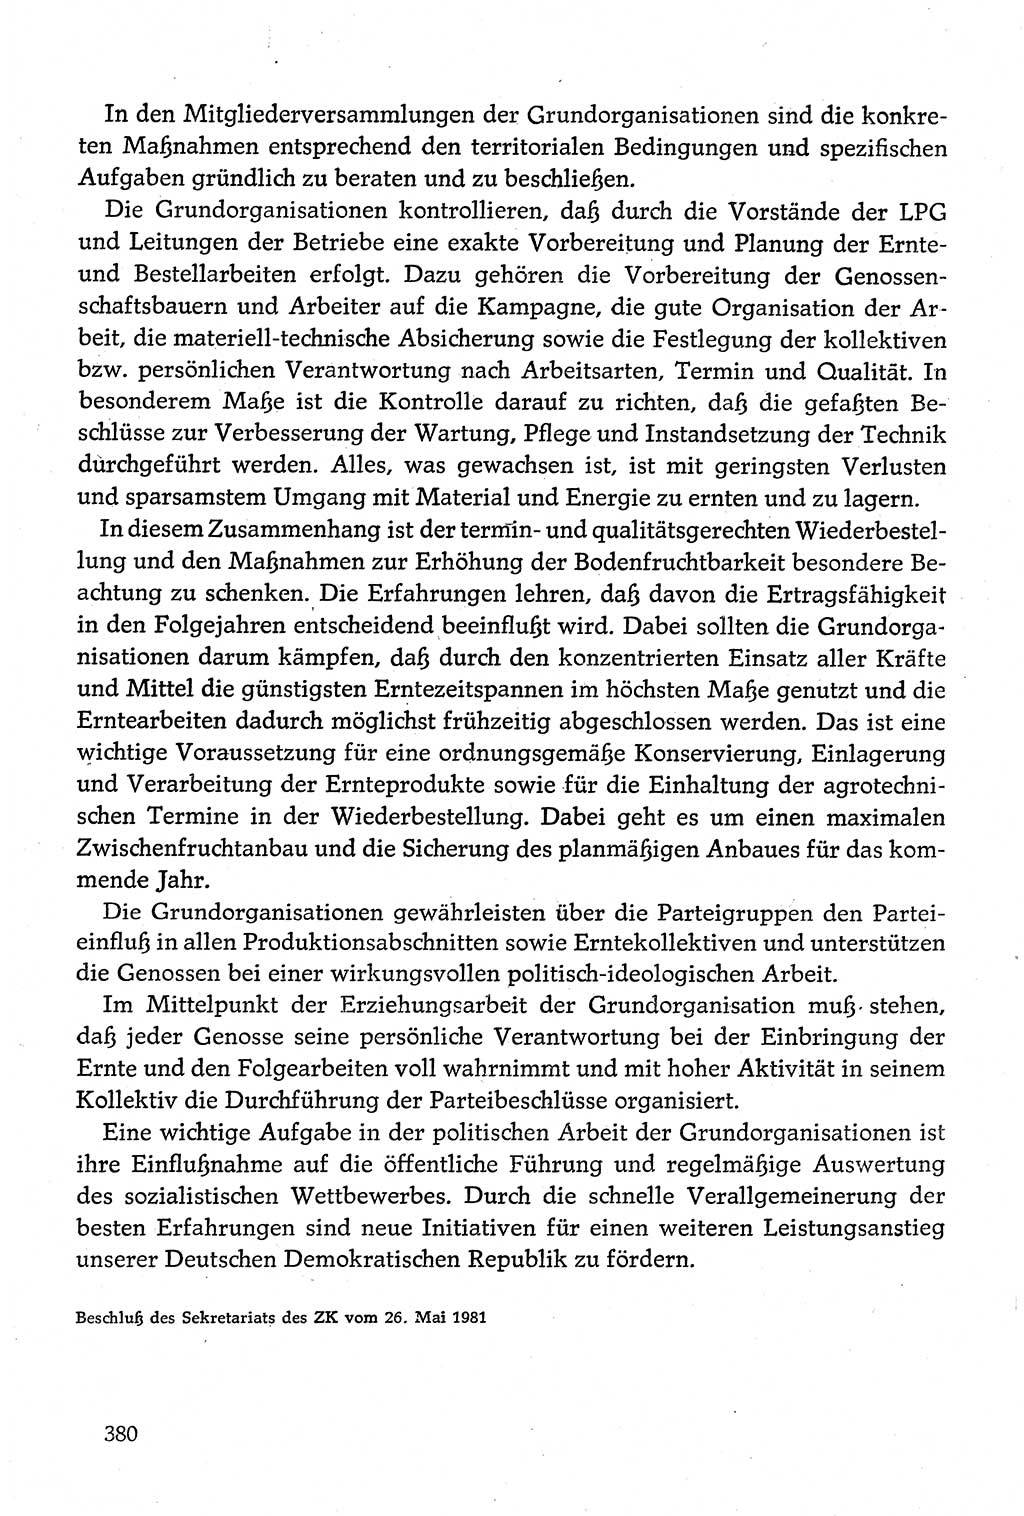 Dokumente der Sozialistischen Einheitspartei Deutschlands (SED) [Deutsche Demokratische Republik (DDR)] 1980-1981, Seite 380 (Dok. SED DDR 1980-1981, S. 380)